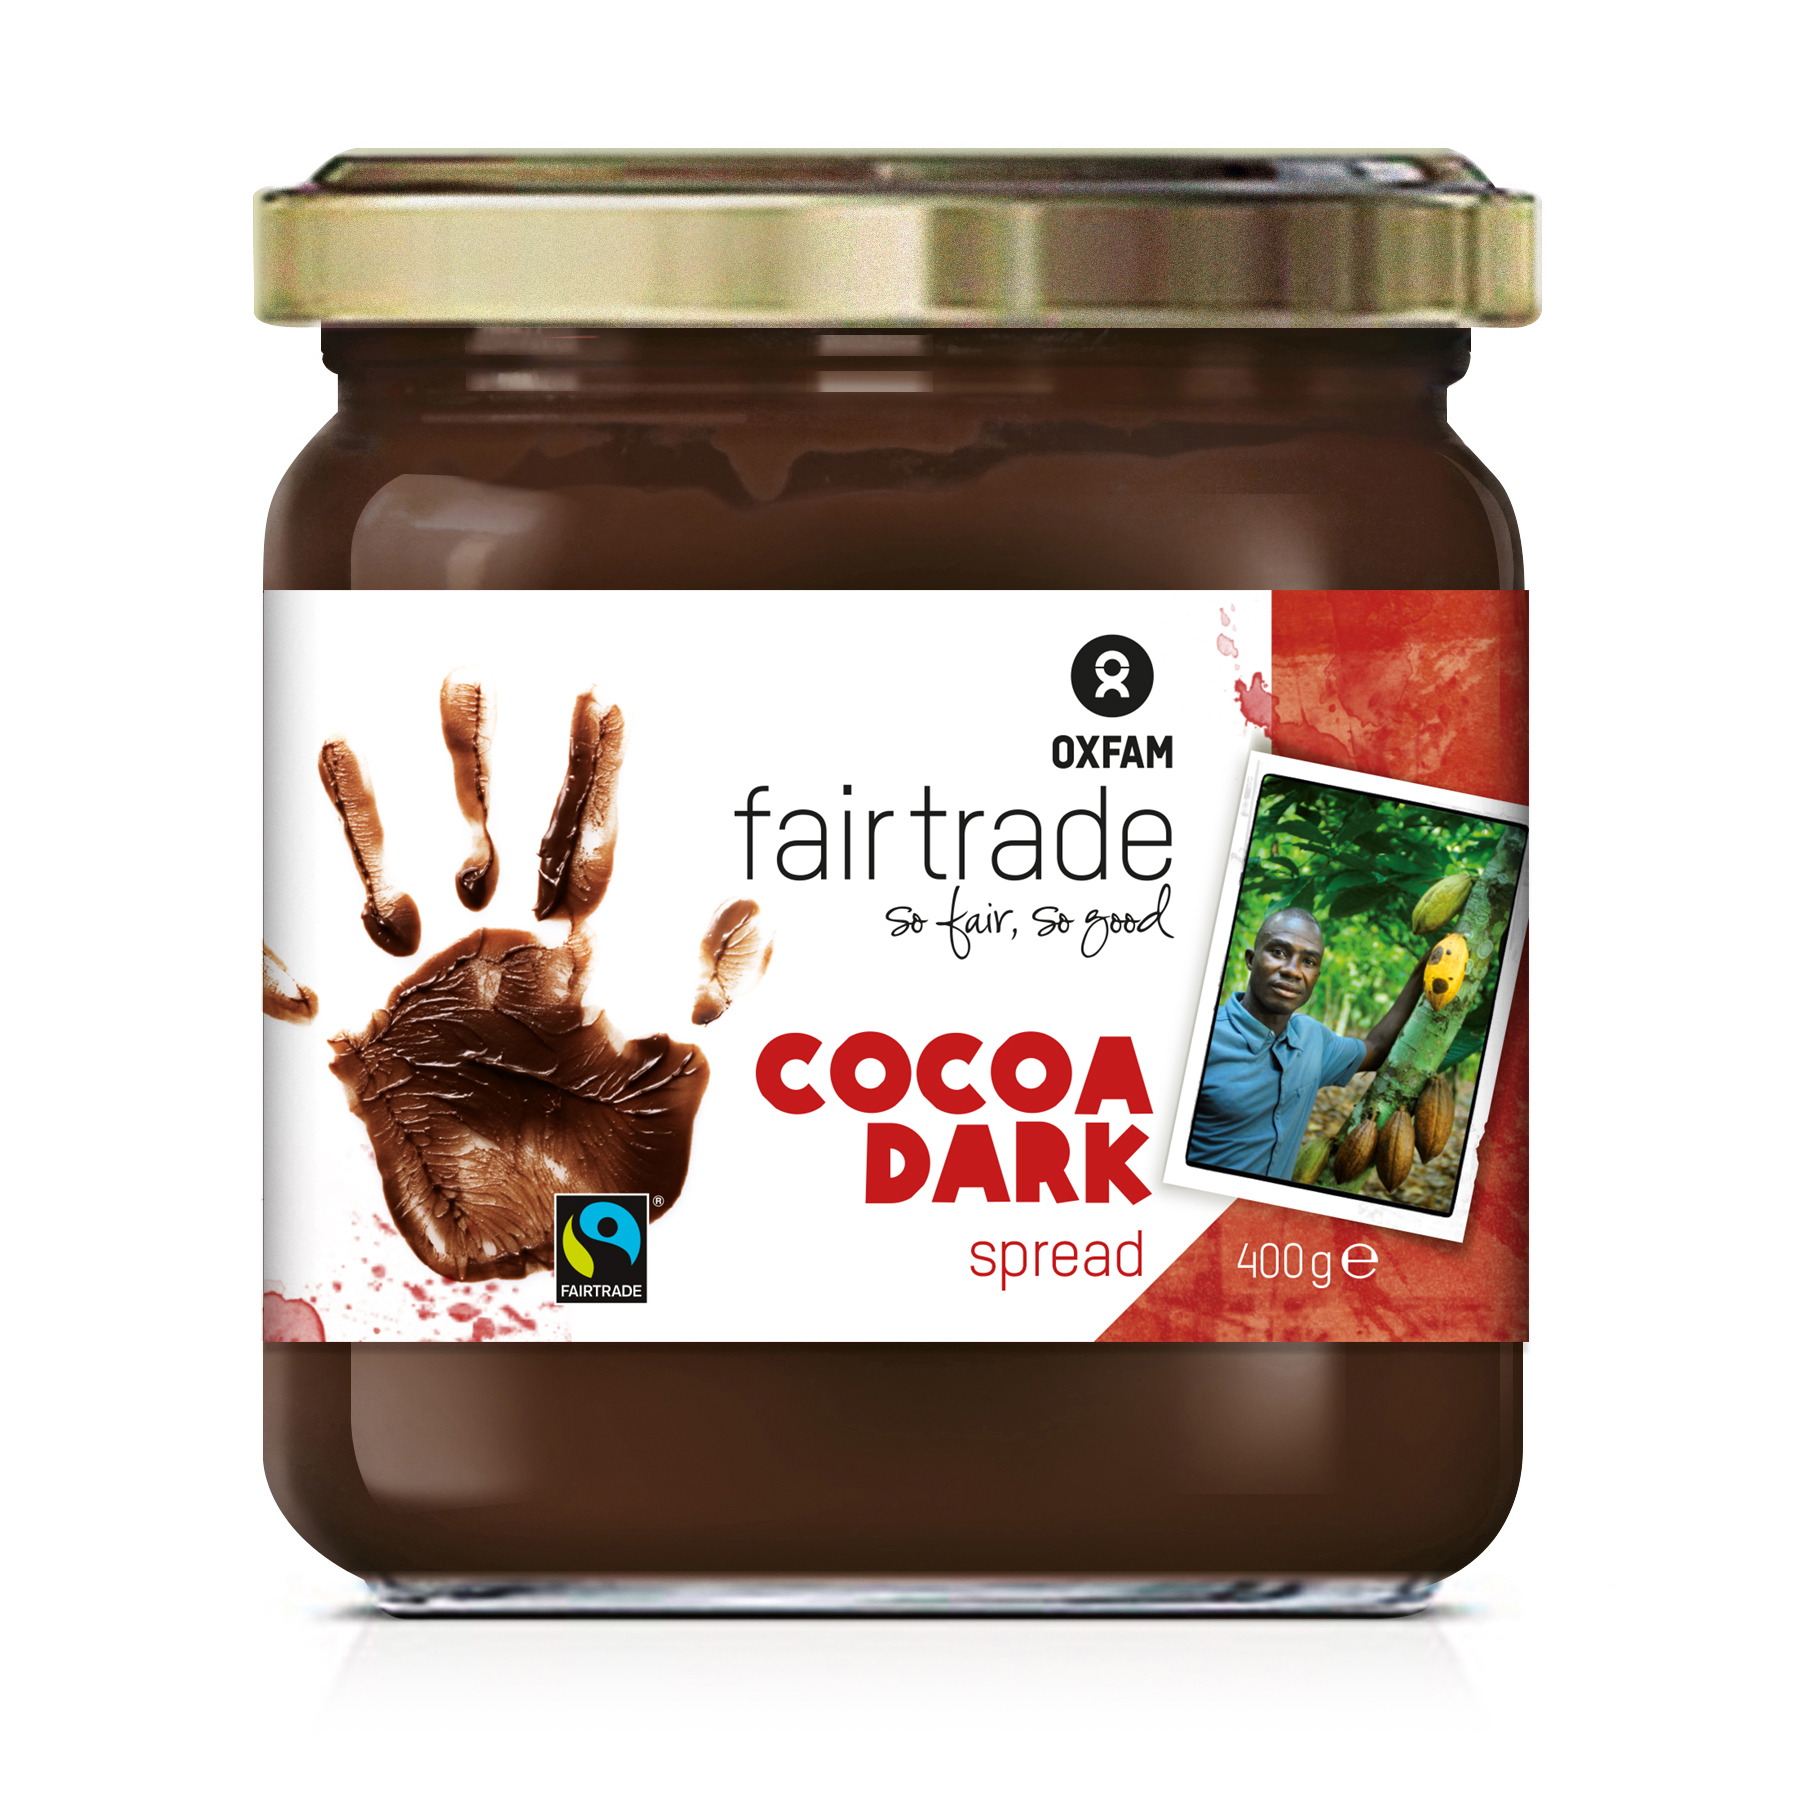 Rsultat de recherche dimages pour cocoa dark spread oxfam